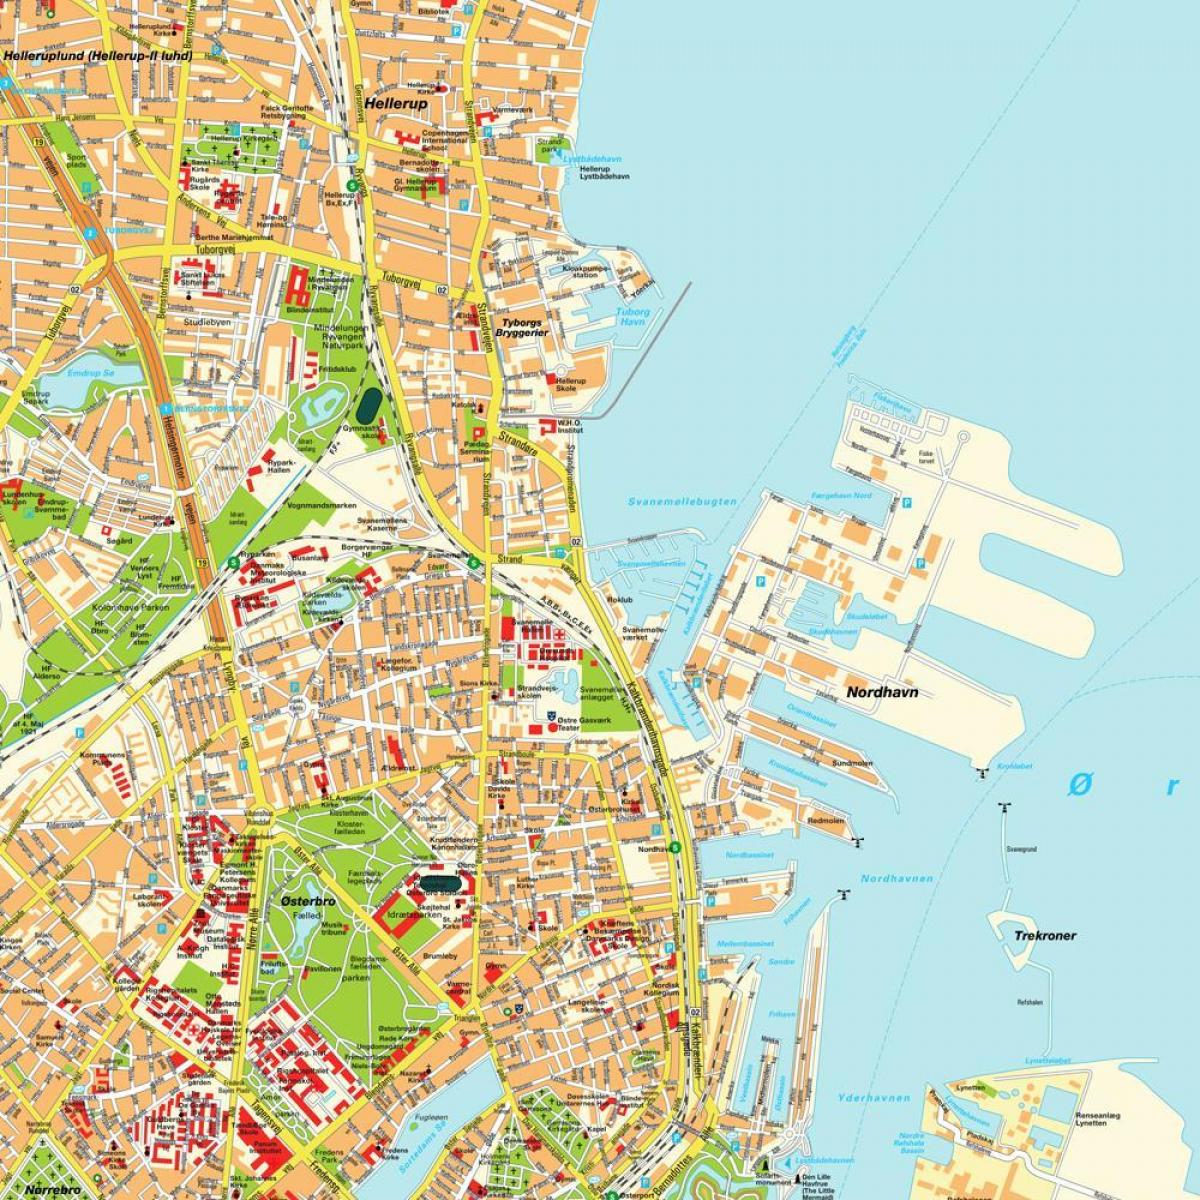 Kort over københavn, danmark